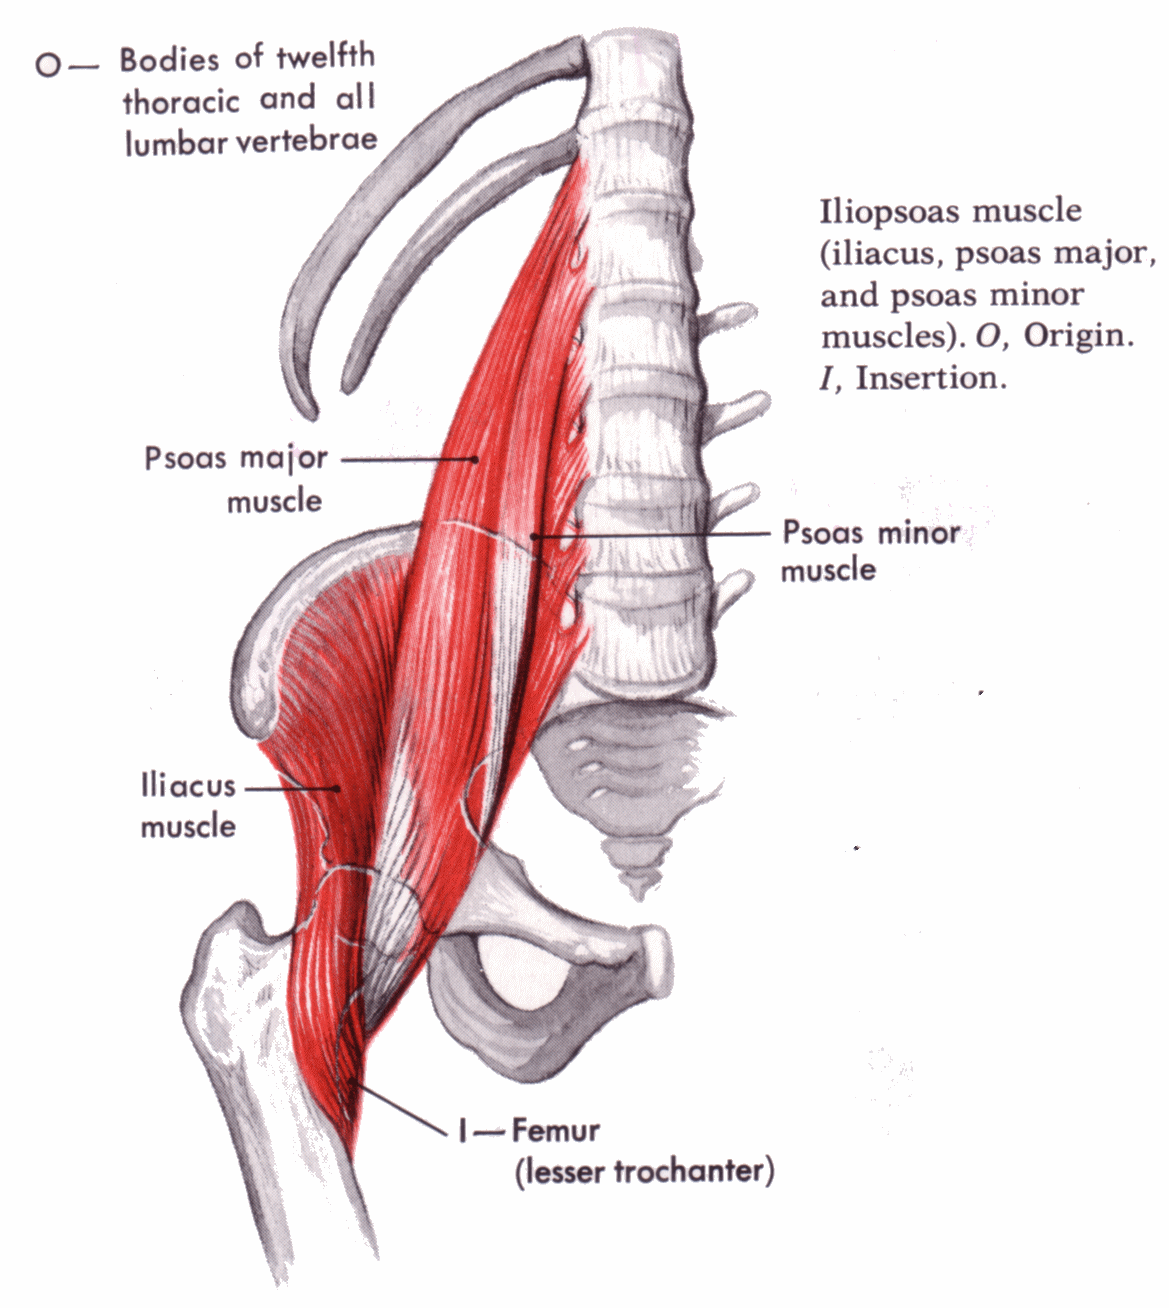 Hip Flexor Pain or Iliopsoas Related Groin Pain